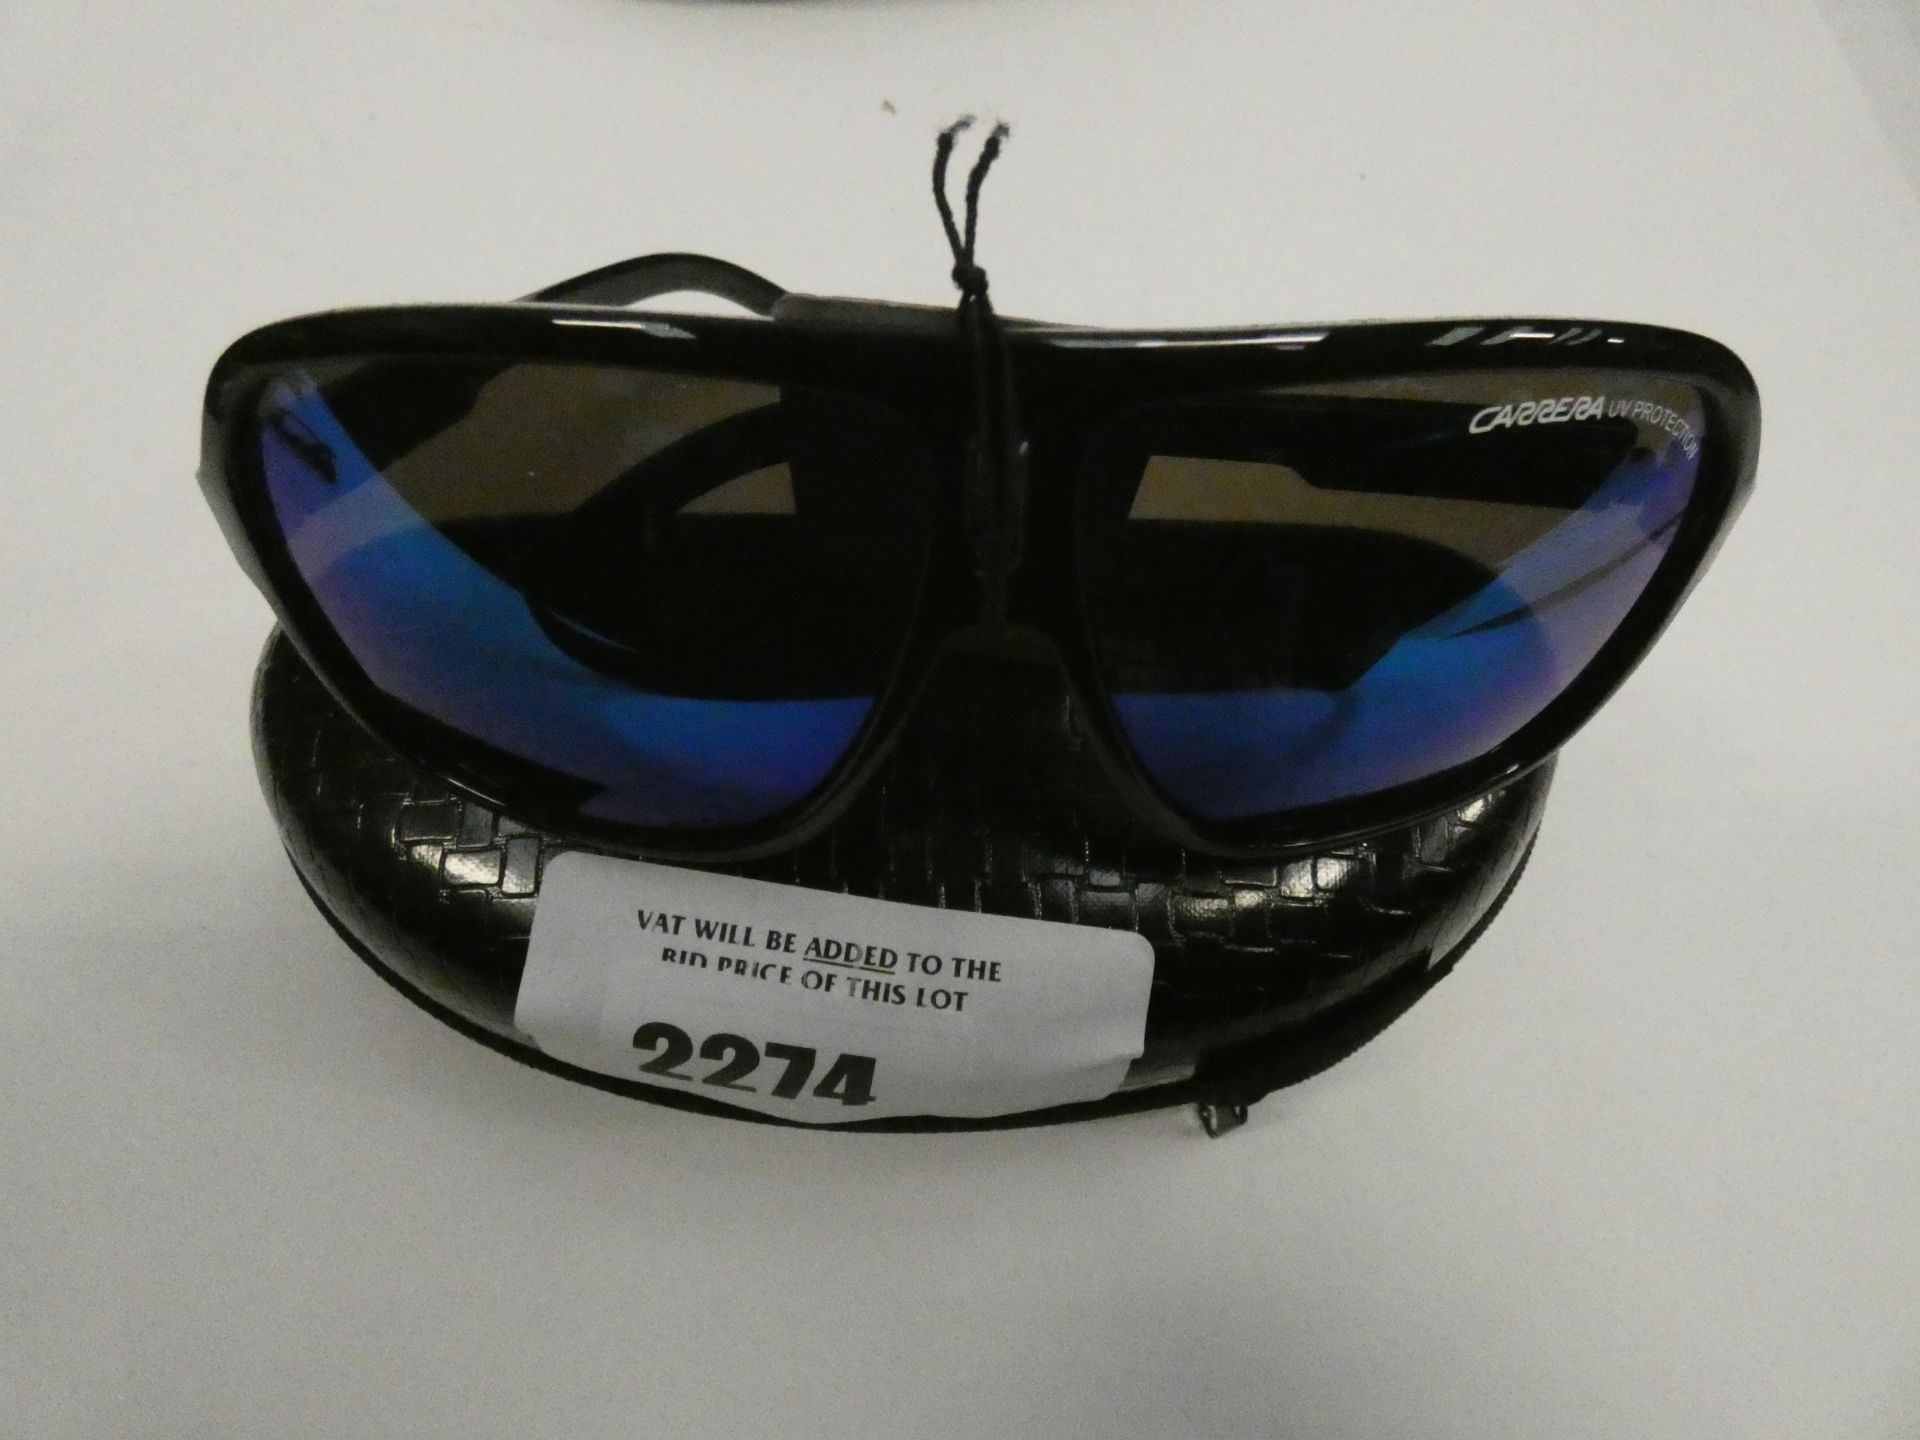 Pair of Carrera sunglasses in case